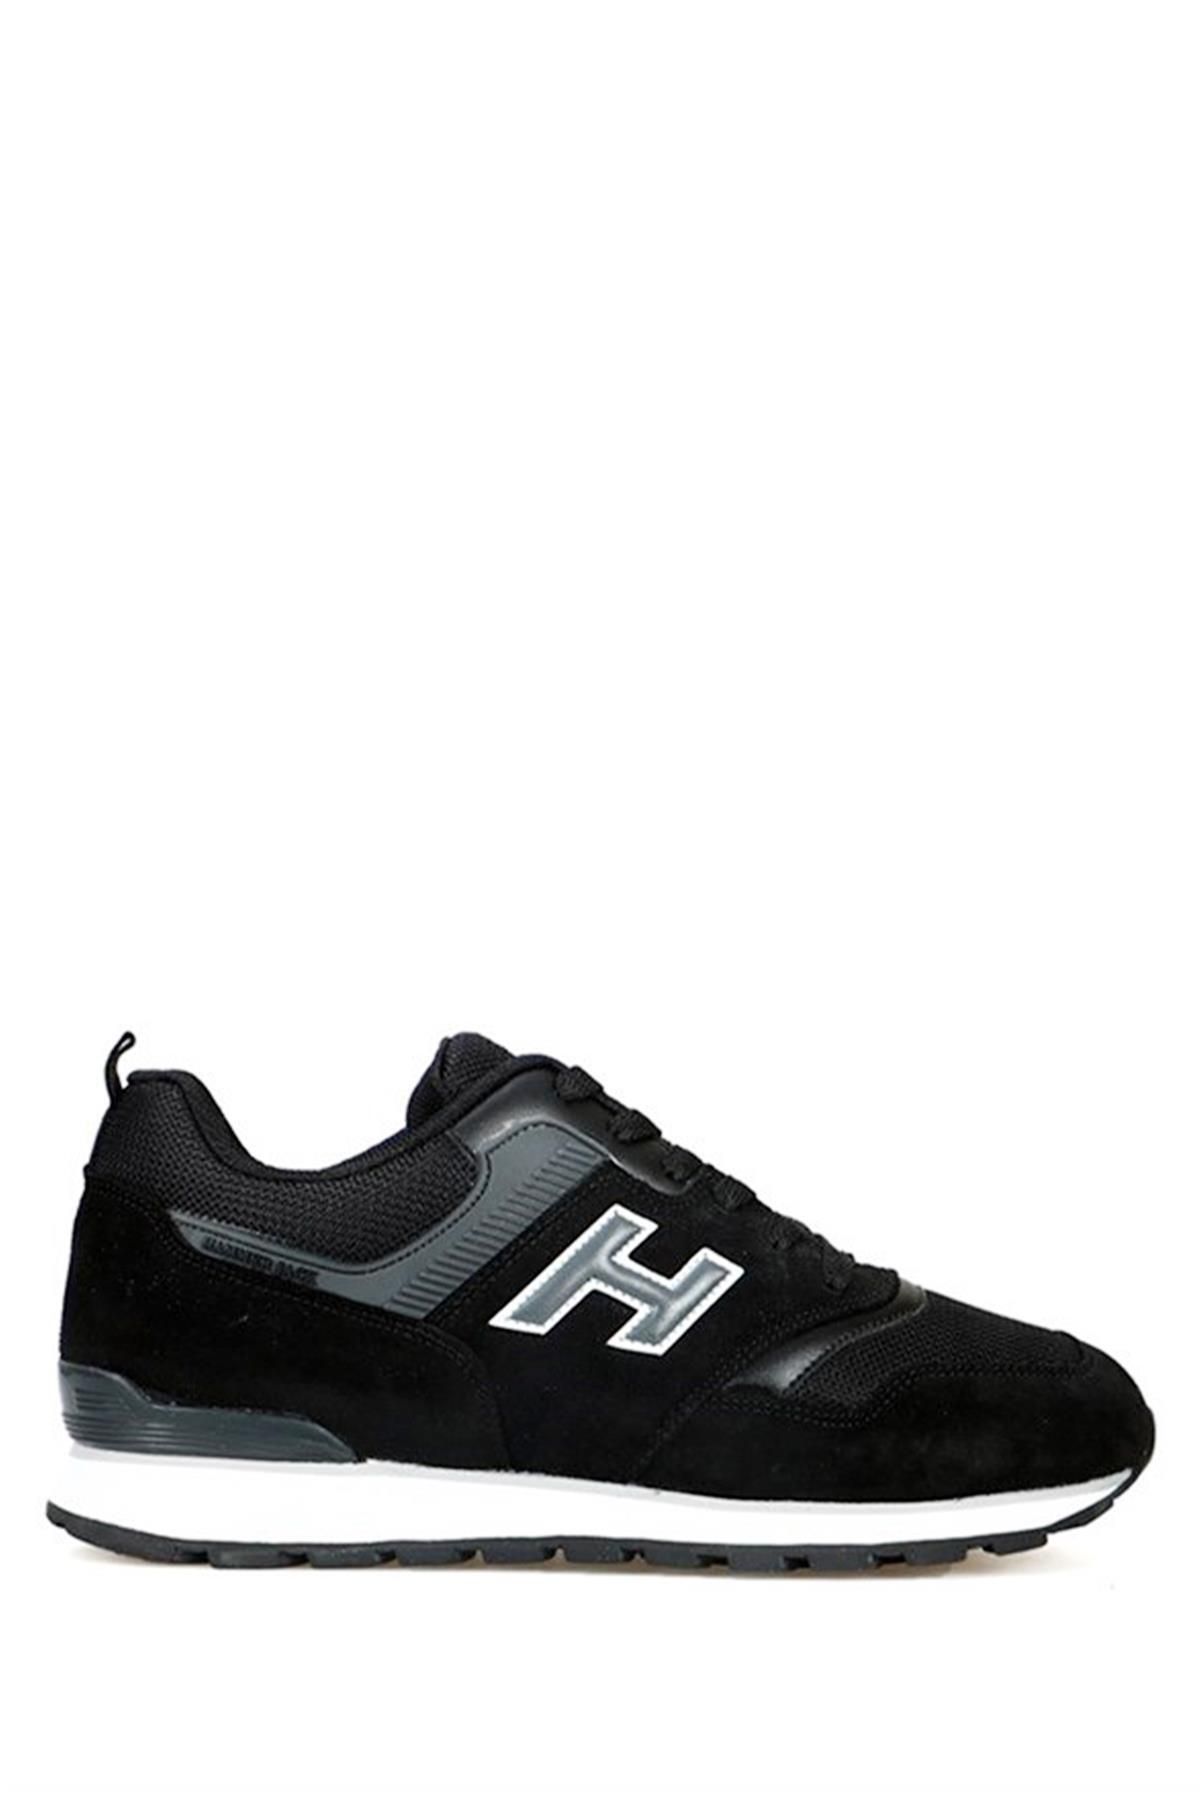 Hammer Jack Hakiki Deri Siyah-gri Erkek Spor Ayakkabı